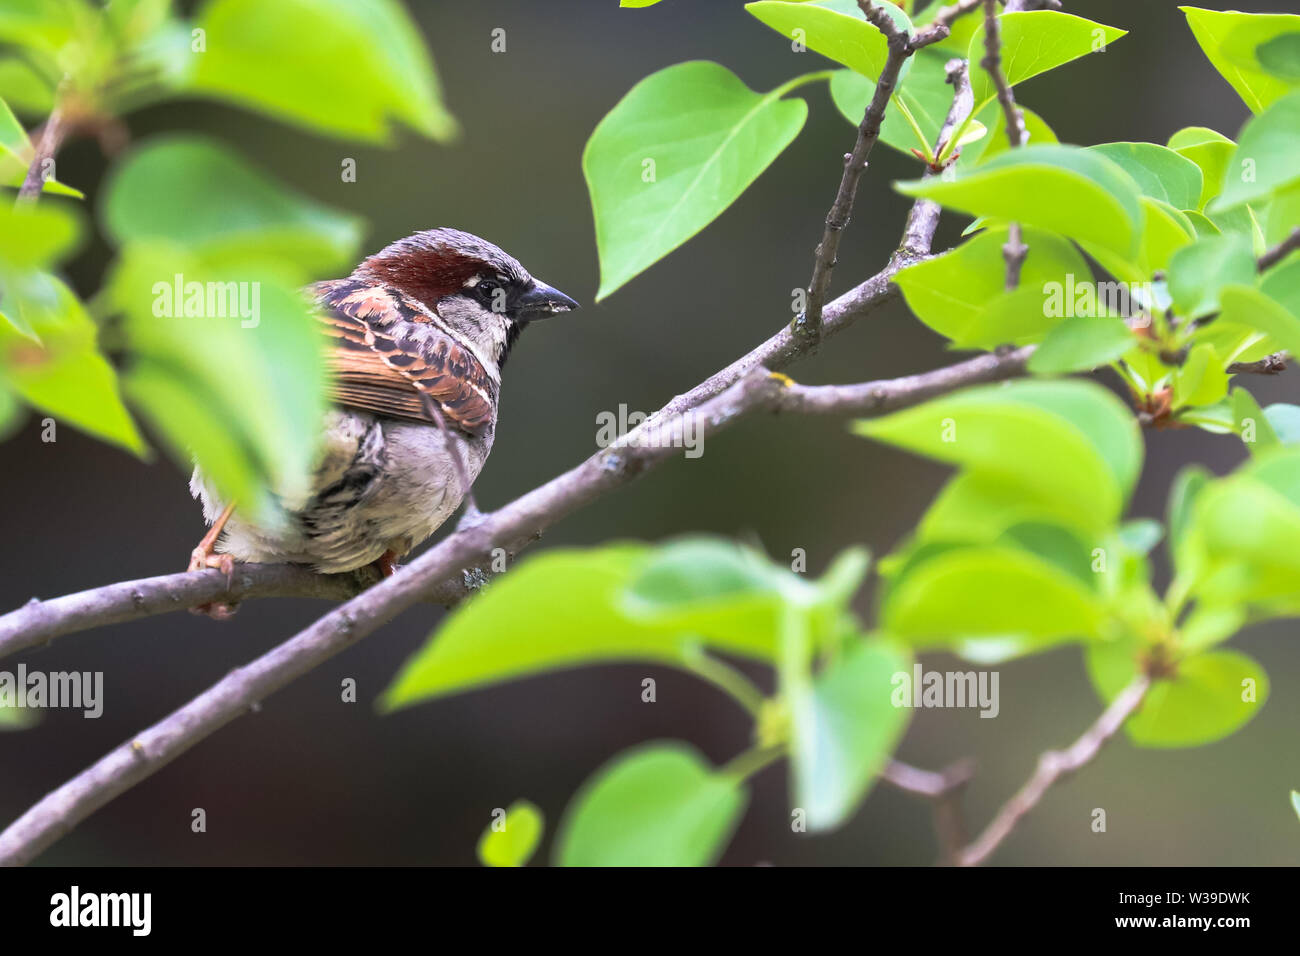 Spatz Vogel auf Ast. Sparrow songbird (Familie Gelbhalsmaus (Apodemus) sitzen und singen auf Ast inmitten grüner Blätter in der Nähe von bis Foto. Vogel Stockfoto